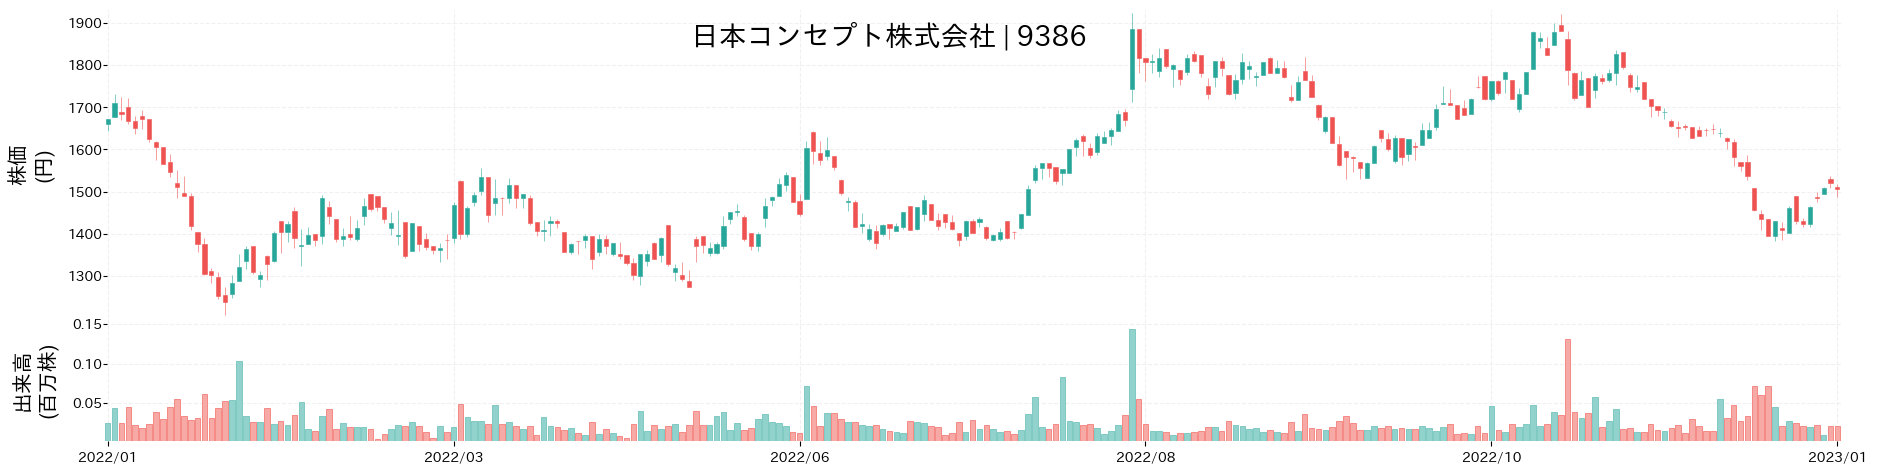 日本コンセプトの株価推移(2022)